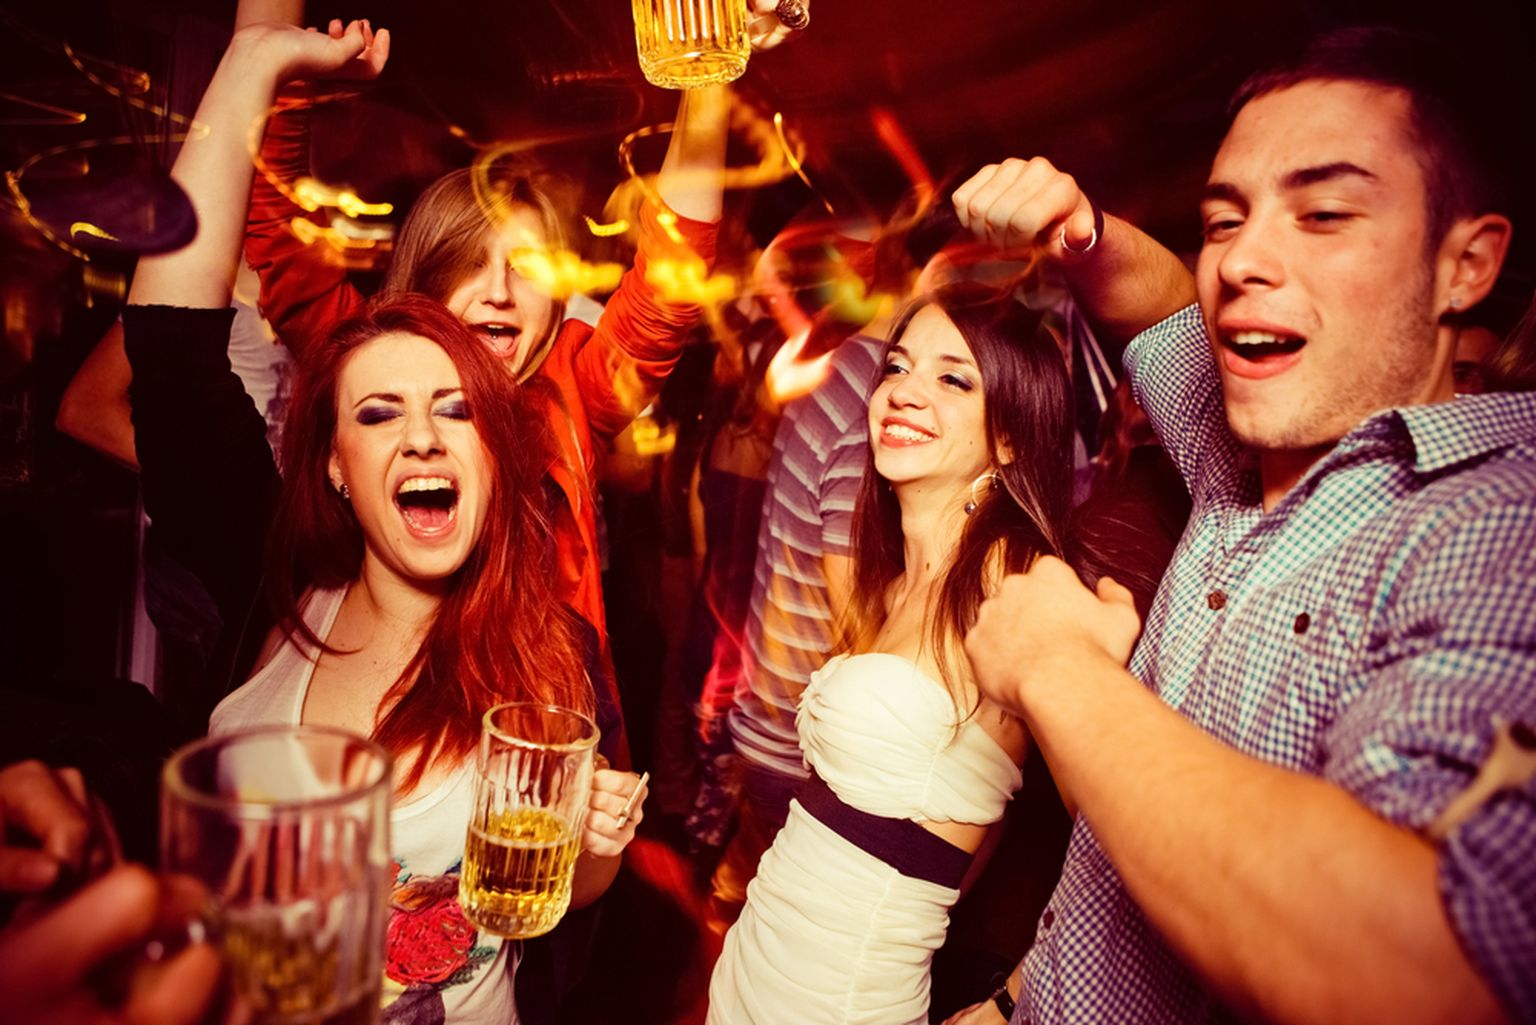 Распитие алкогольных напитков и танцы не позволяют в ночных клубах соблюдать правило 2+2. Фото иллюстративное.